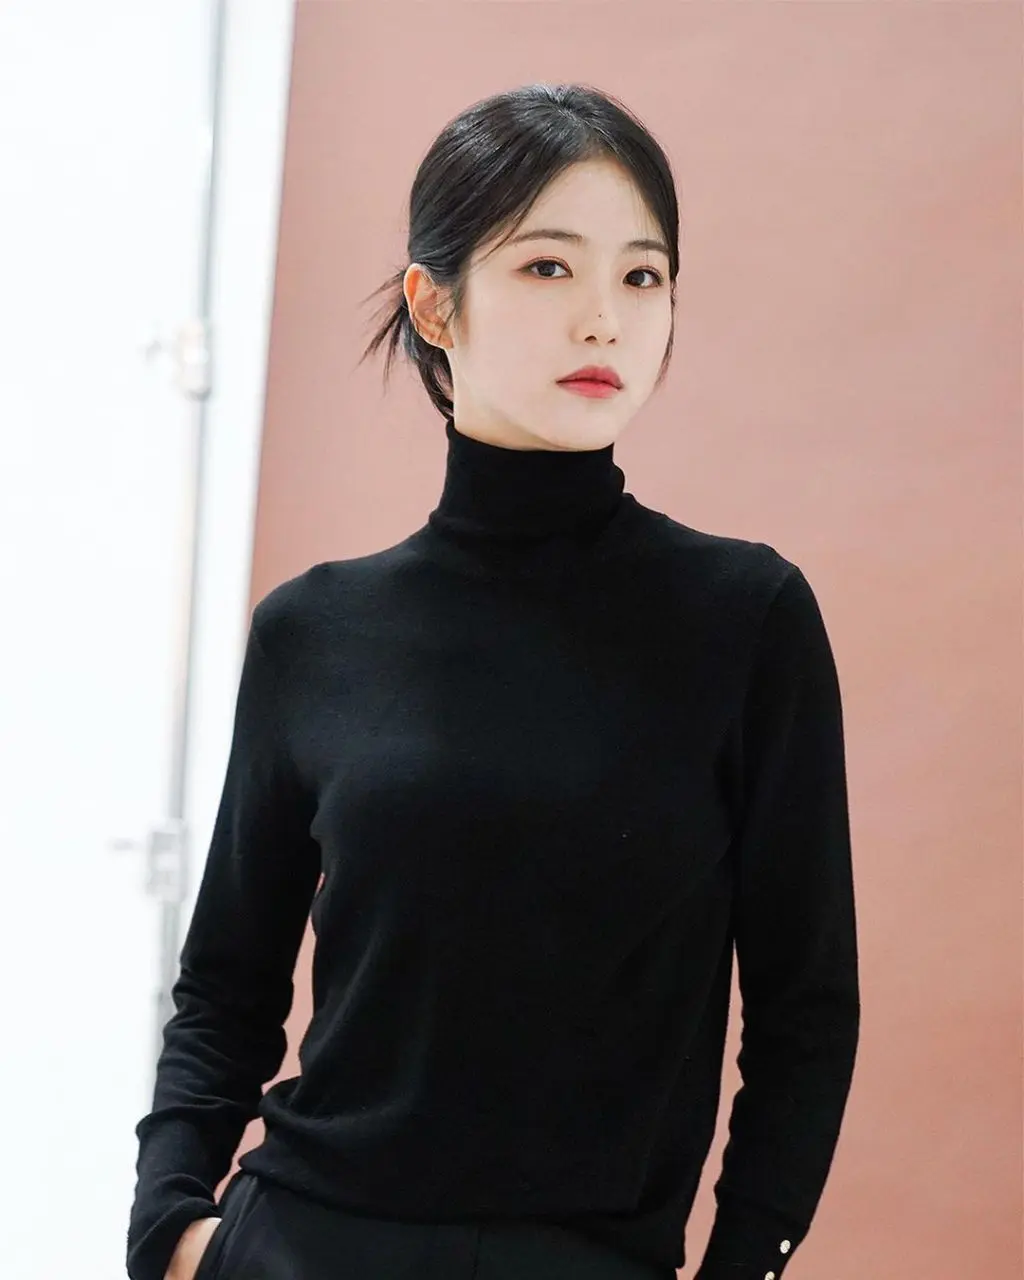 นักแสดงดาวร้าย หน้าสวย ชินเยอึน จากเรื่อง The Glory